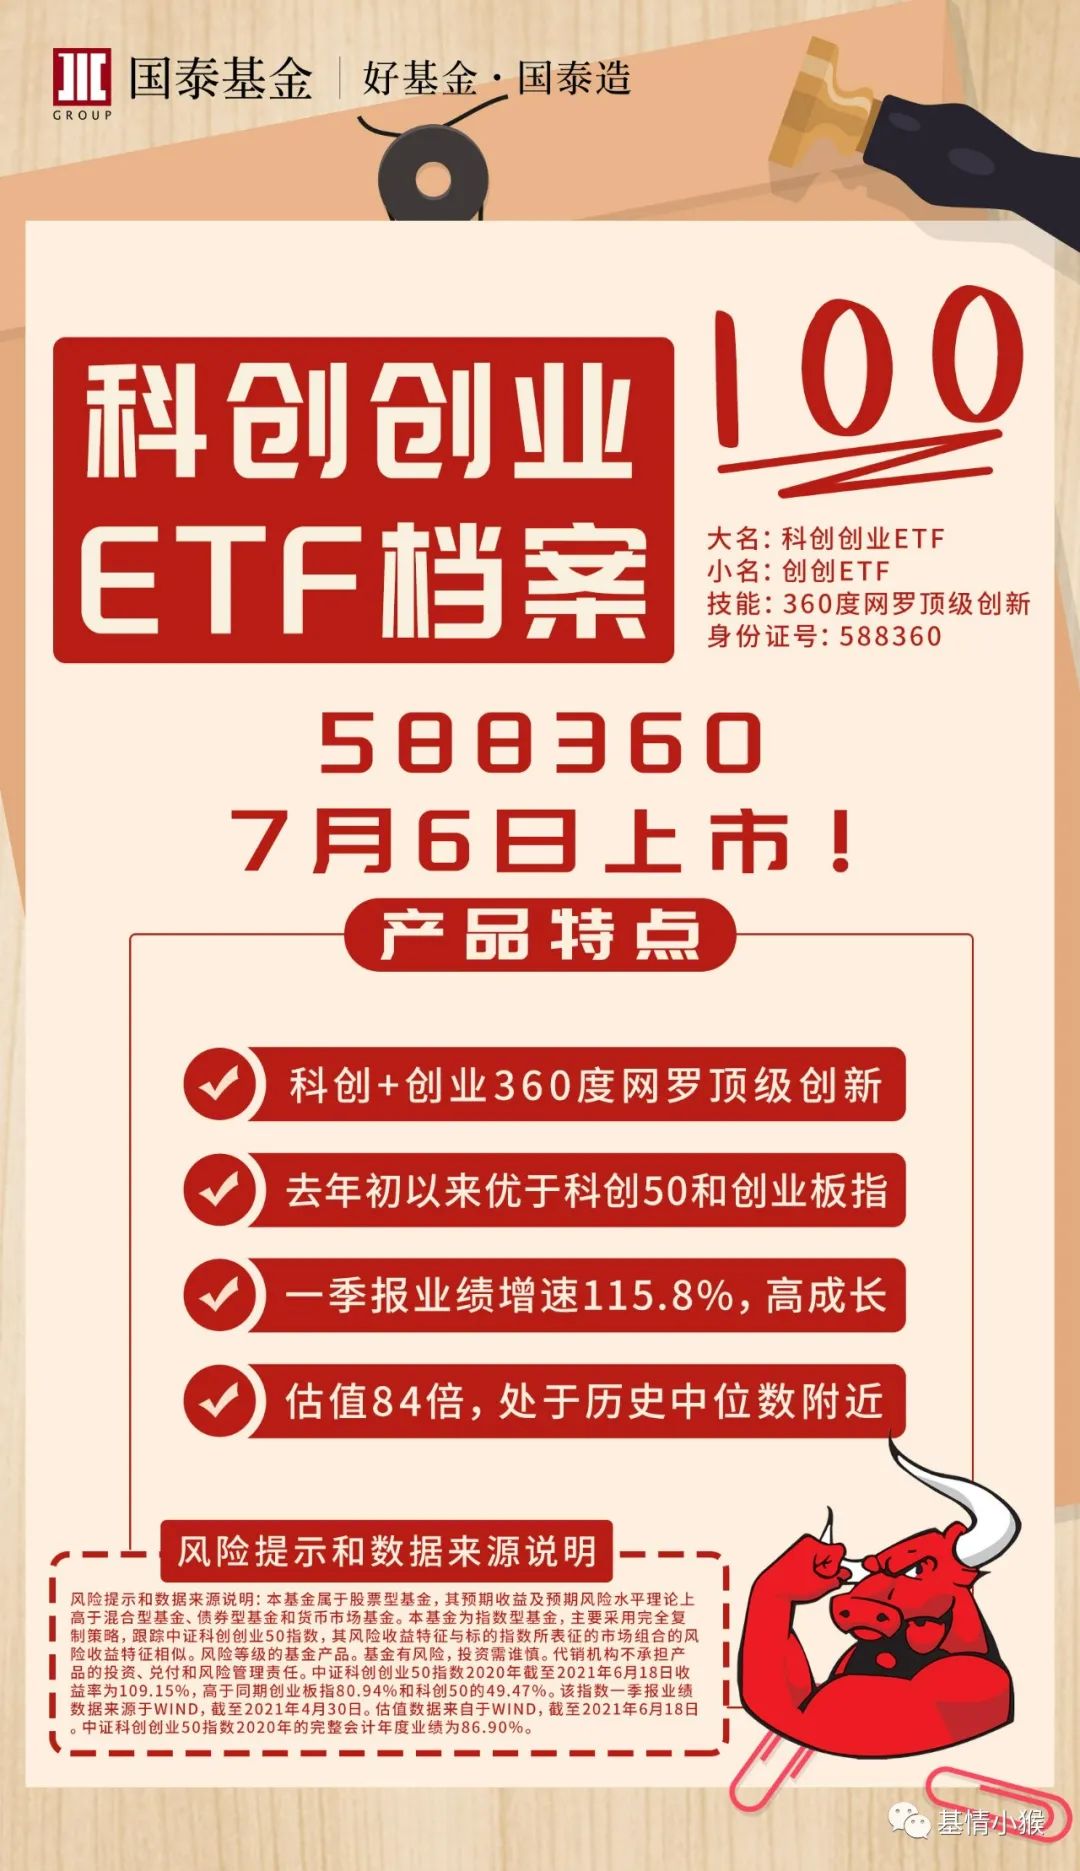 “国泰科创创业ETF于7月6日上市交易